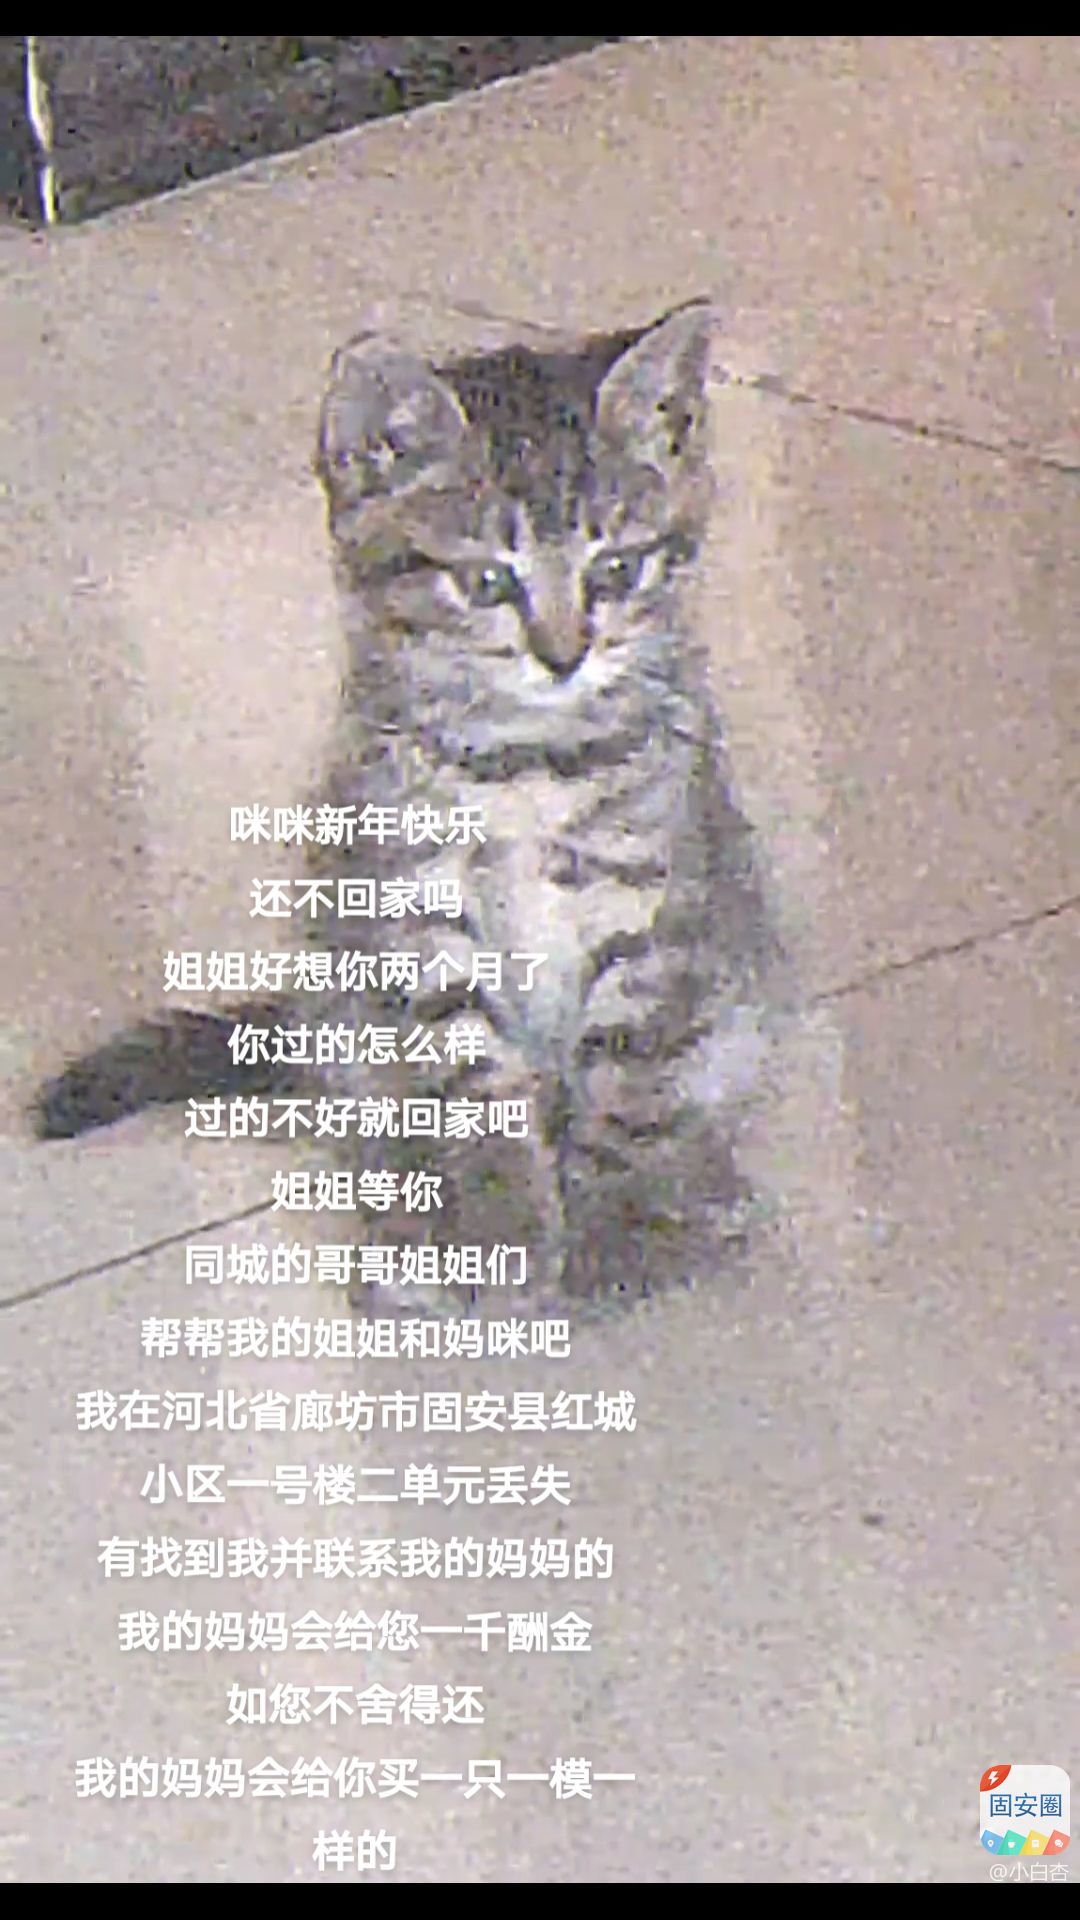 寻猫启示找到必有一千元酬金7246 作者:小白杏 帖子ID:290836 启示,找到,必有,一千,酬金